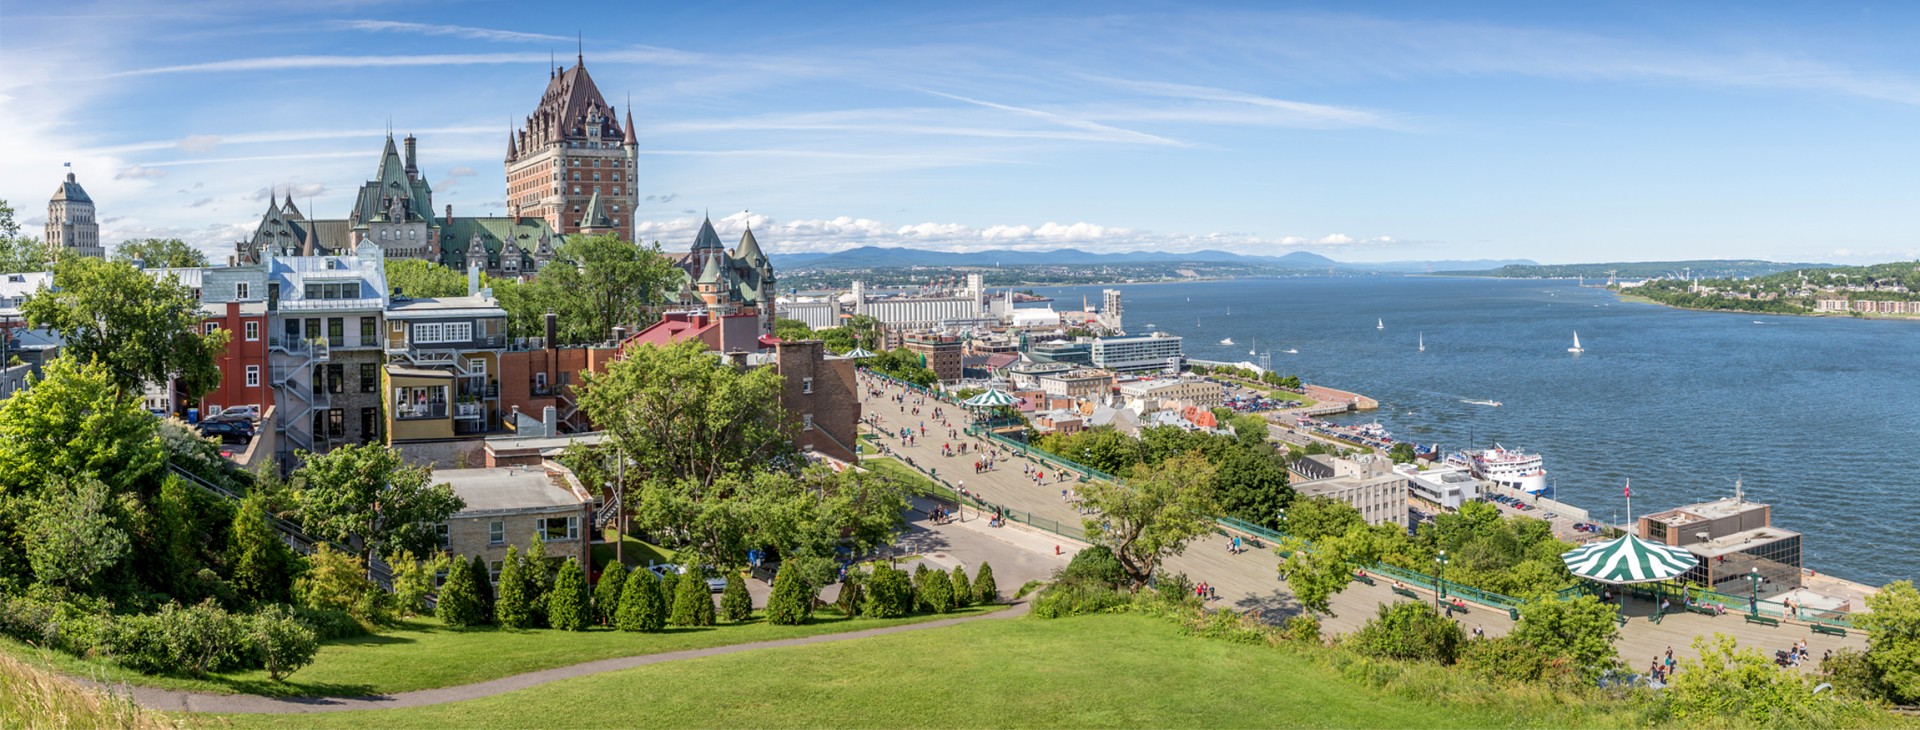 Québec city in the summer